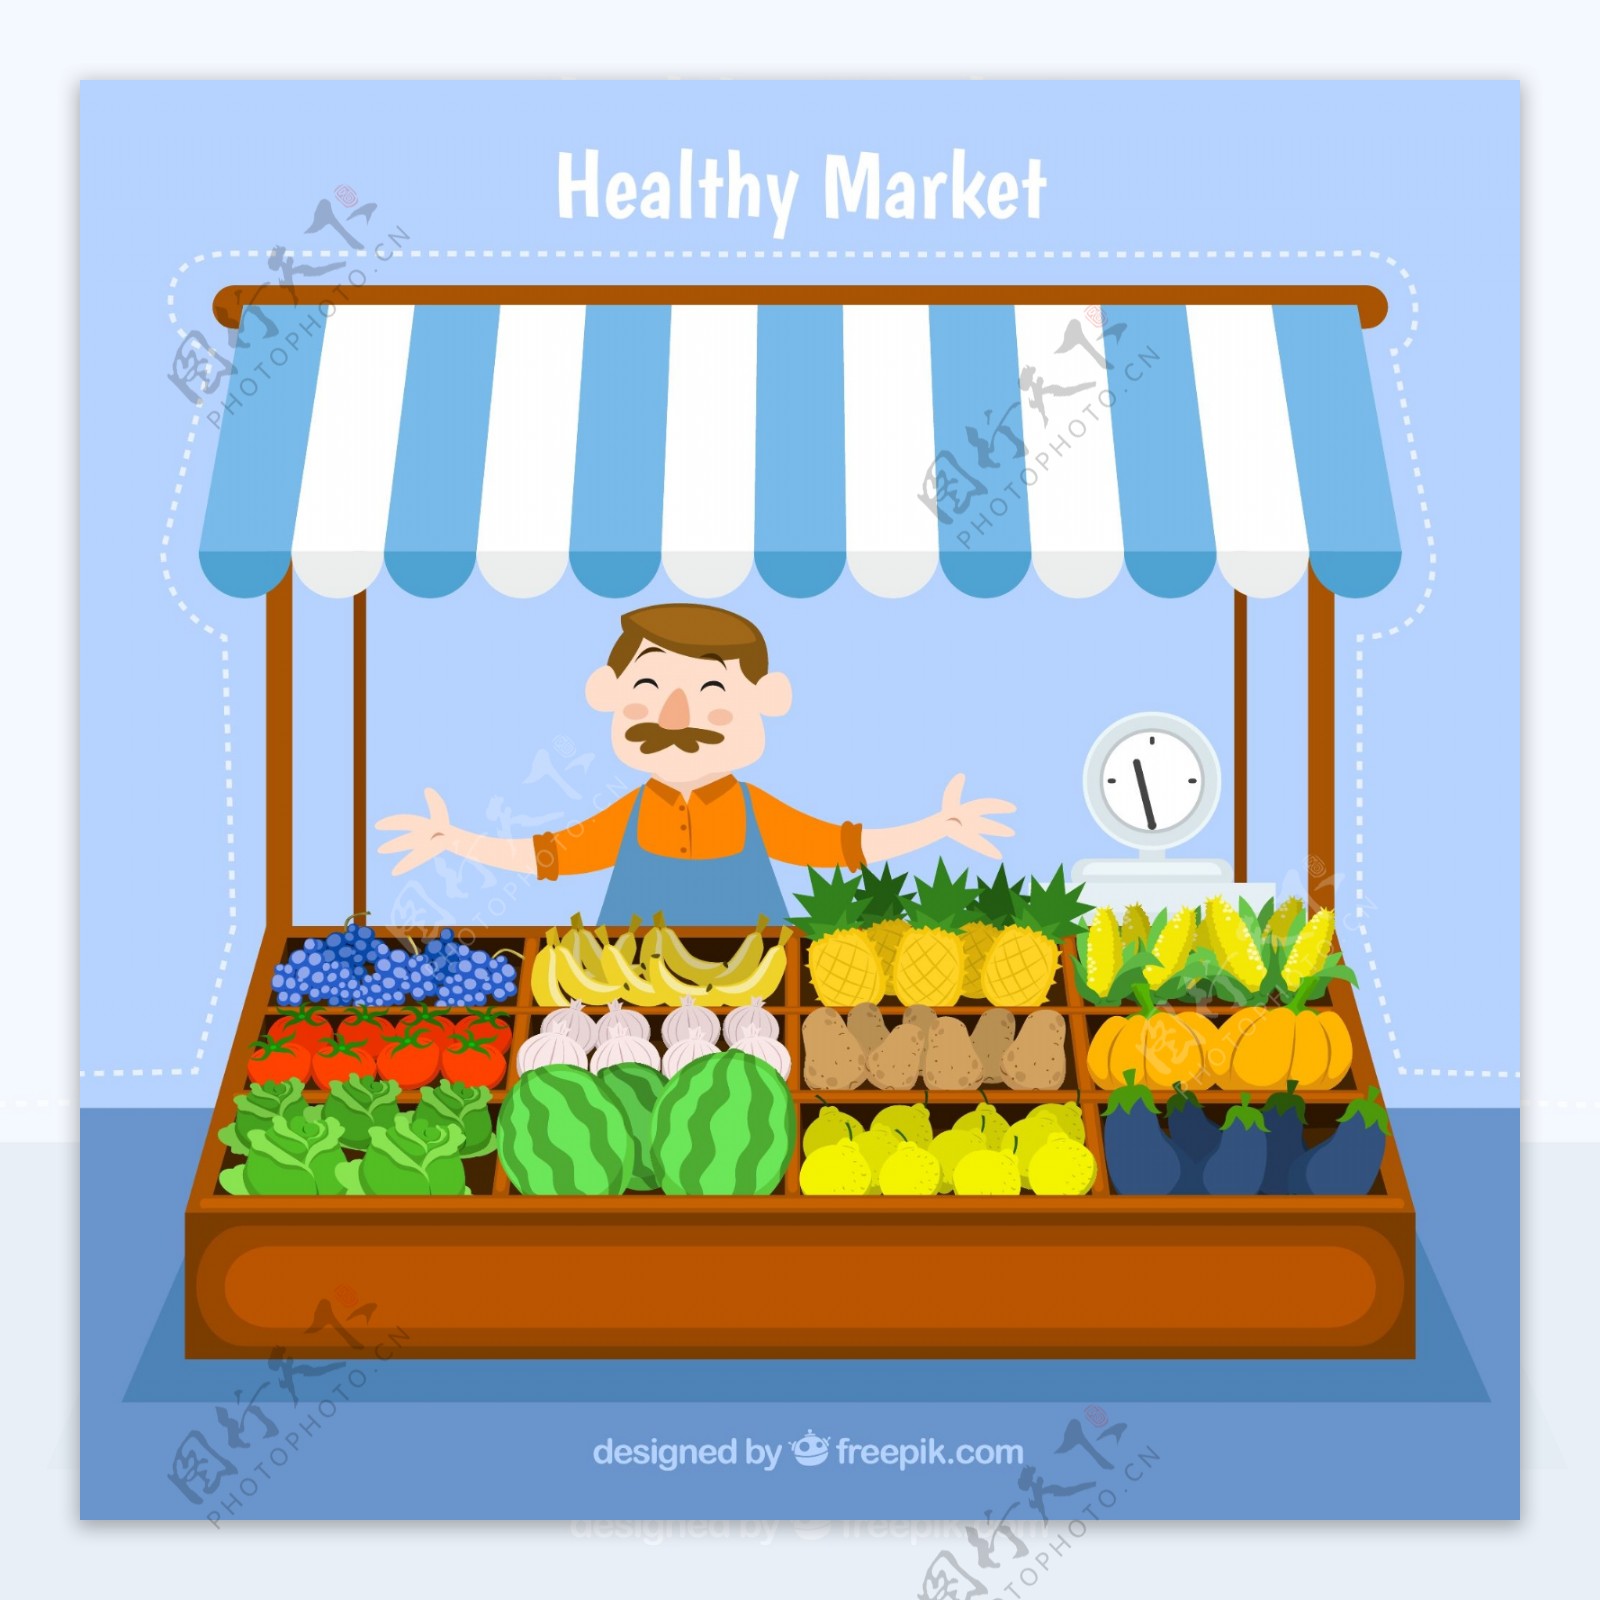 卖水果蔬菜的小摊矢量素材